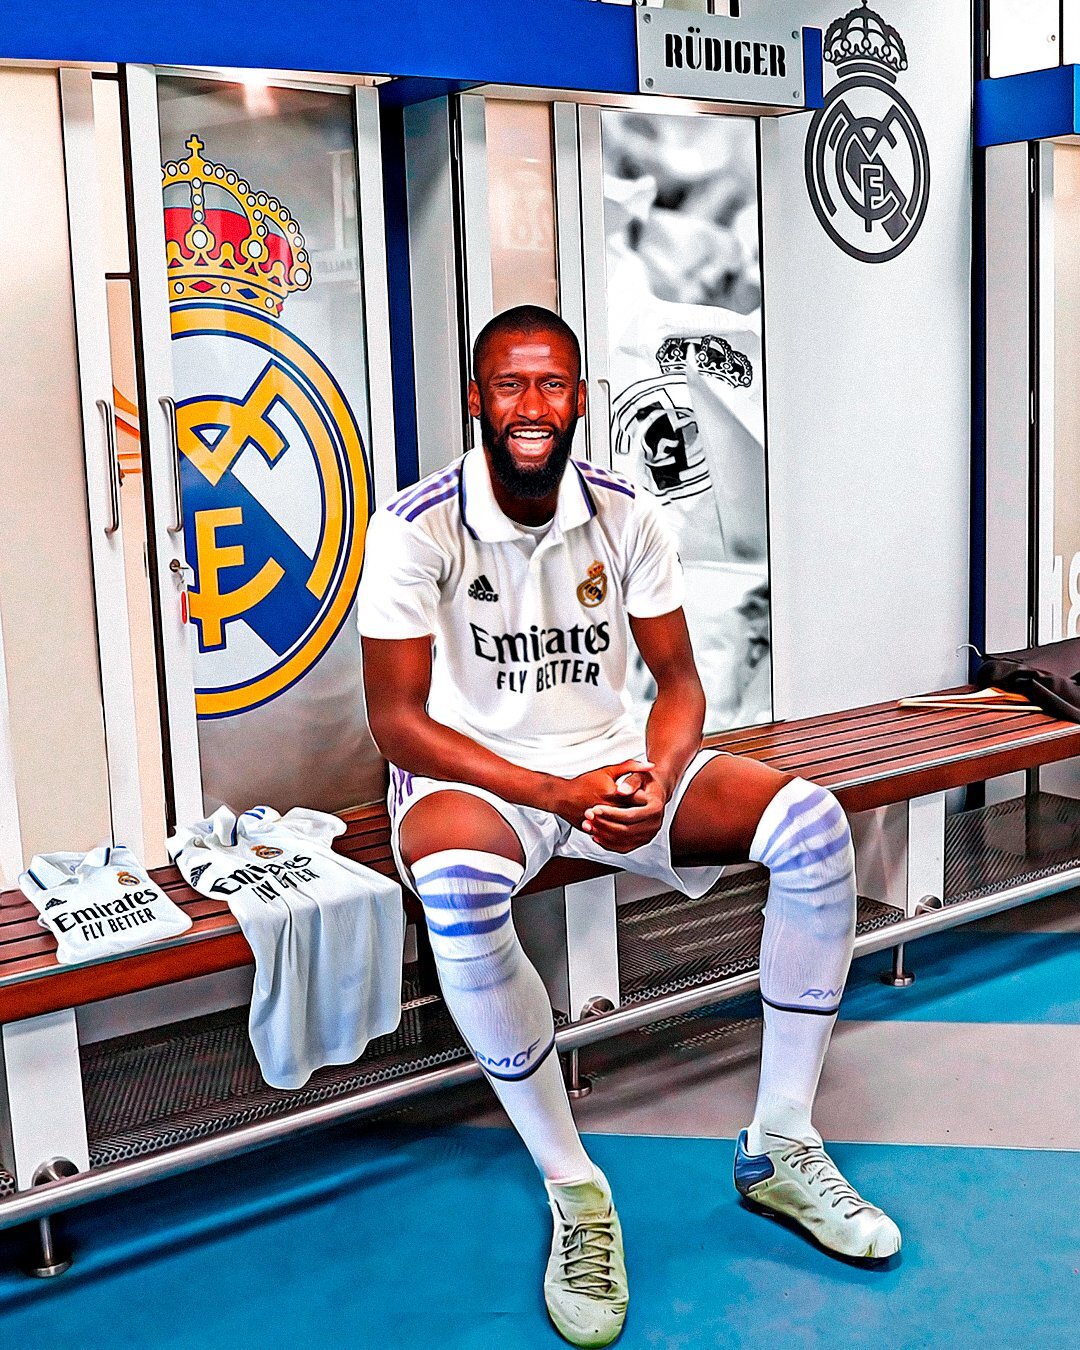 Auf Instagram veröffentlichte Real Madrid eine Fotomontage, auf welcher Rüdiger bereits im Trikot der Königlichen zu sehen ist